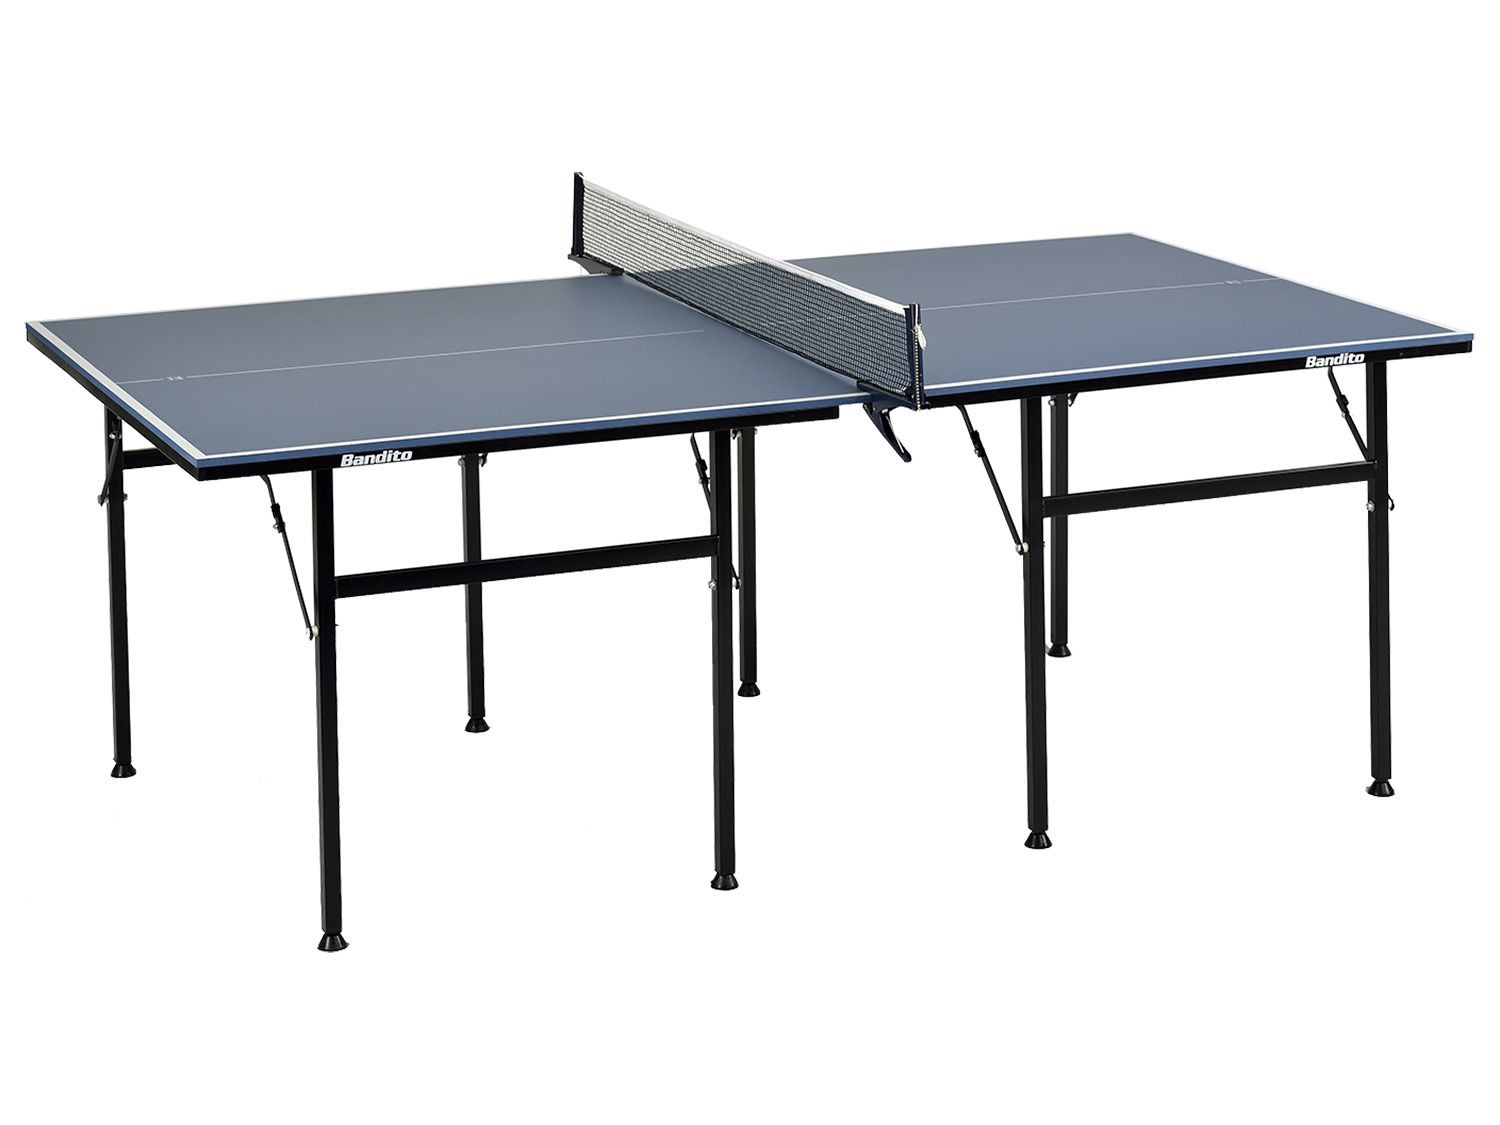 Indoor Das ideale Modell für geringere Raumgrößen Tischtennisplatte BIG-FUN Speilfeld 206 x 115 cm